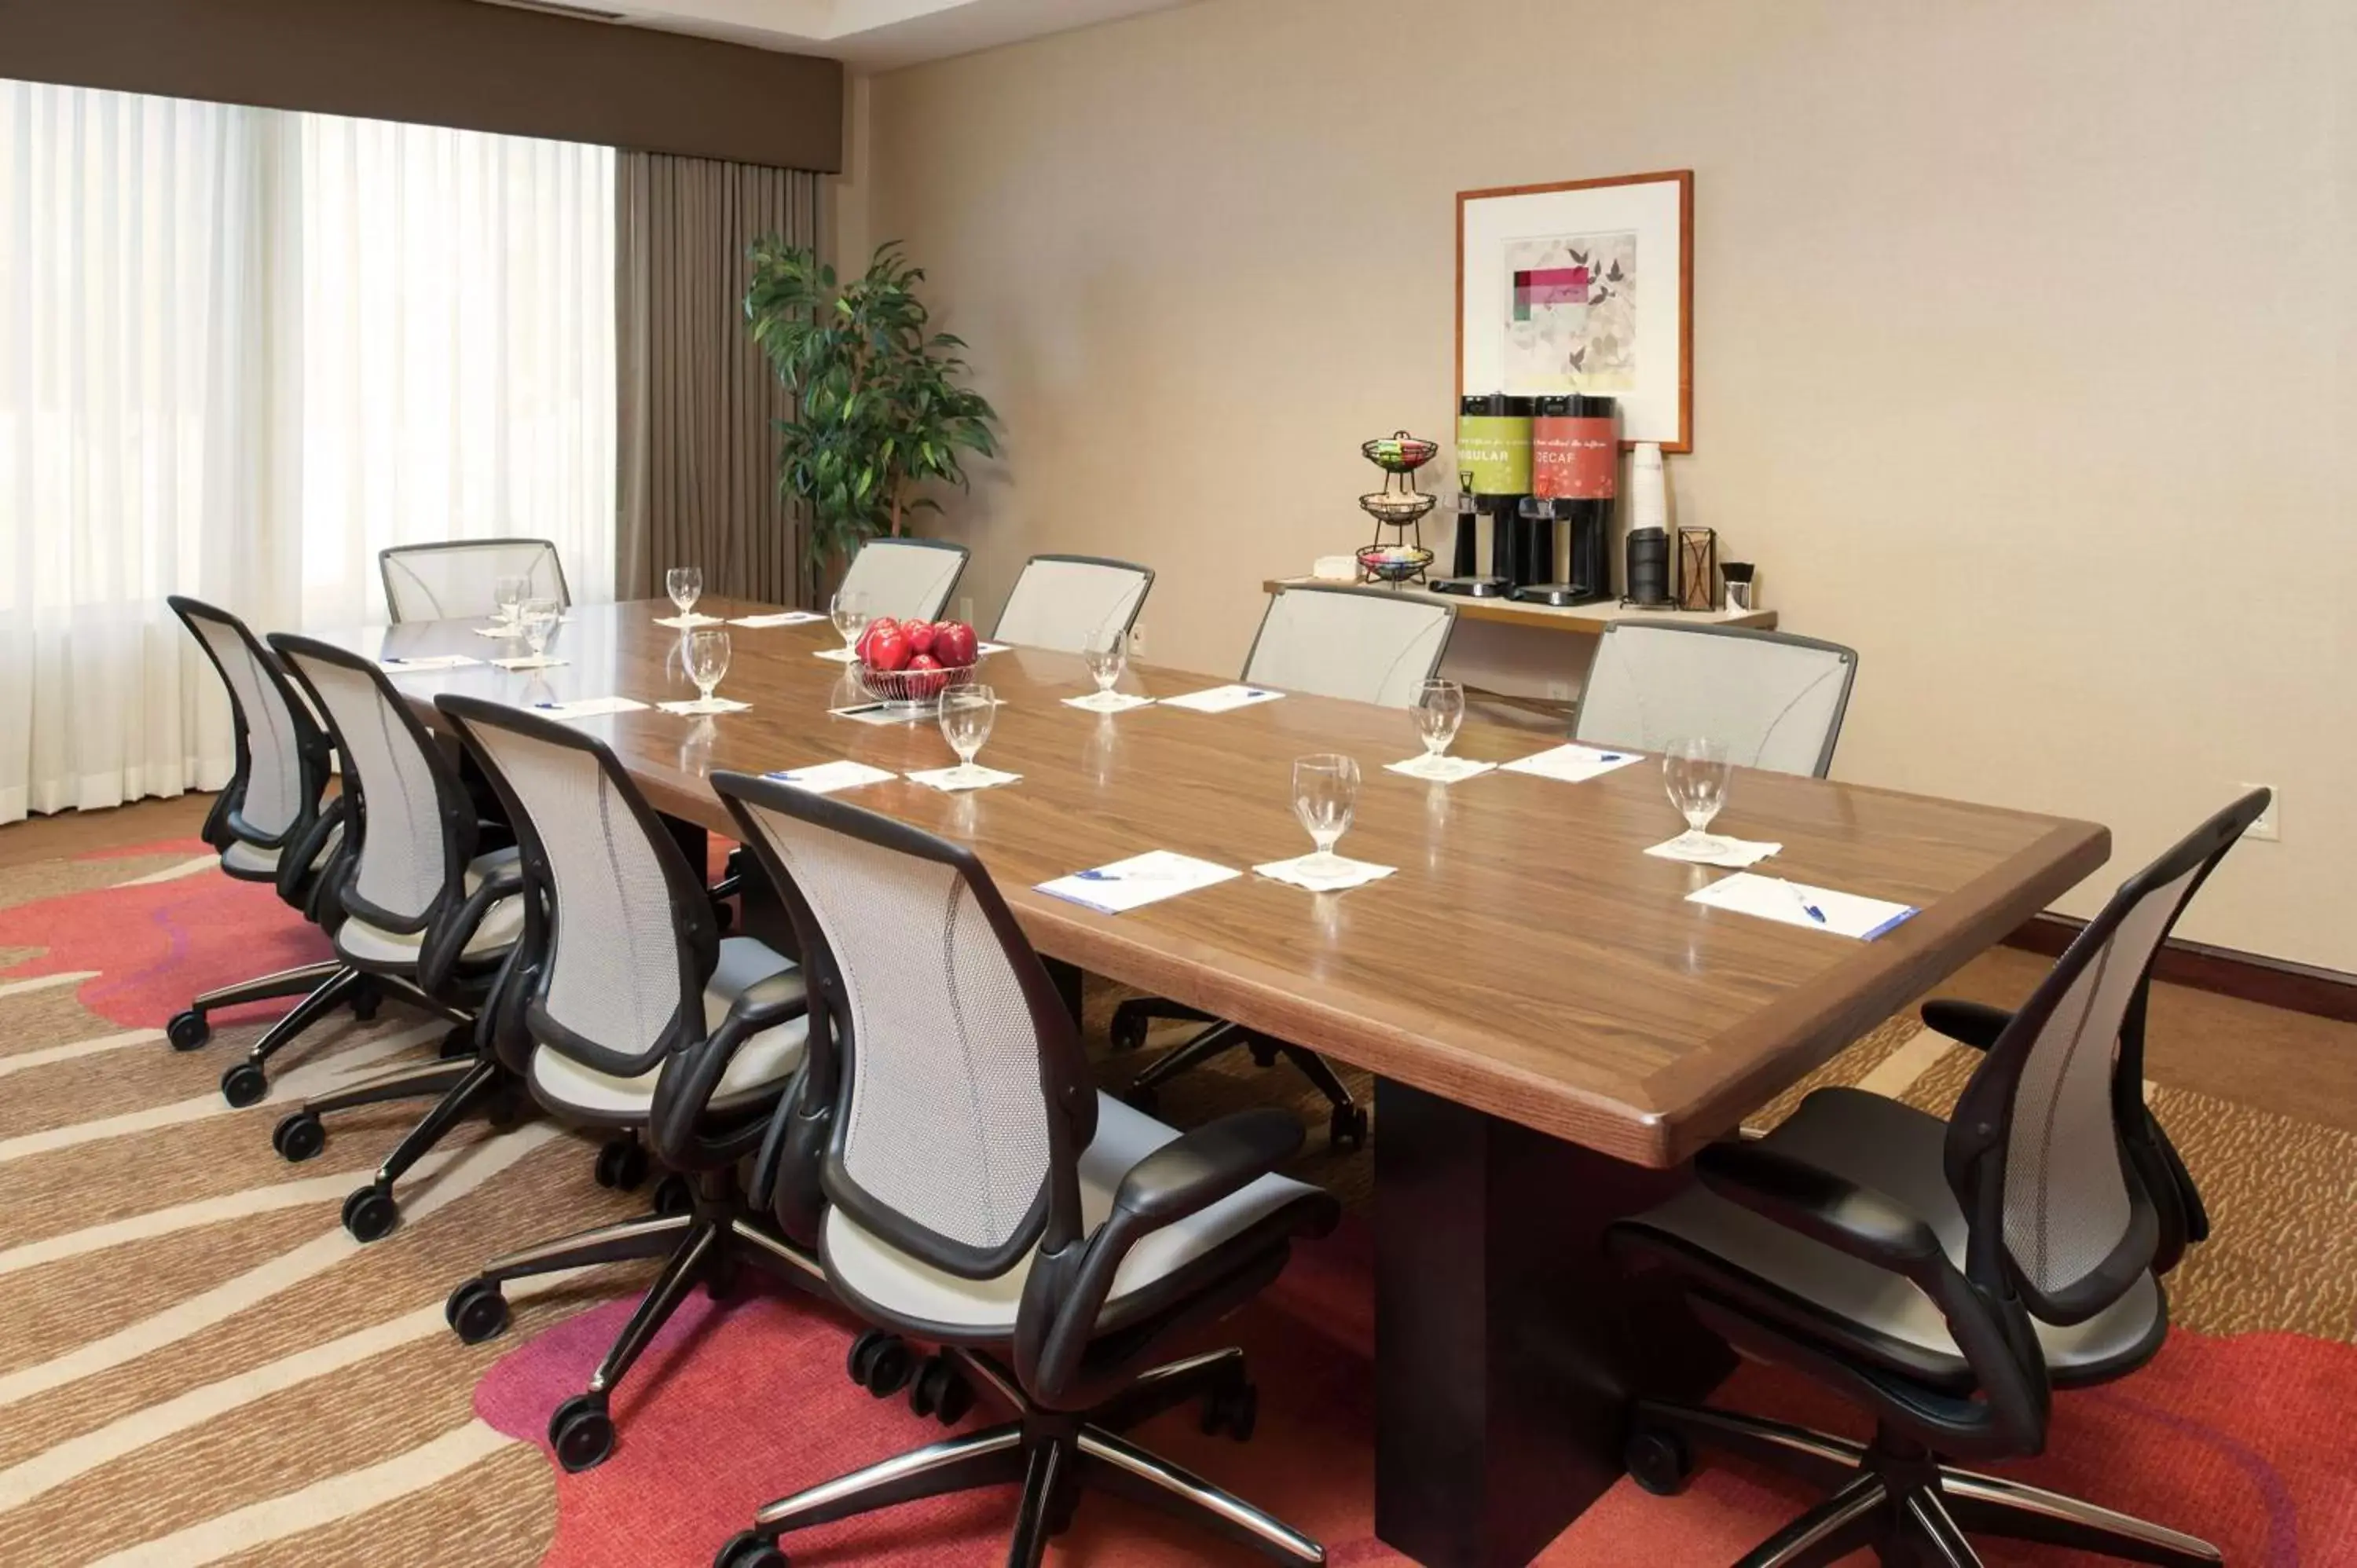 Meeting/conference room in Hilton Garden Inn St. Paul Oakdale